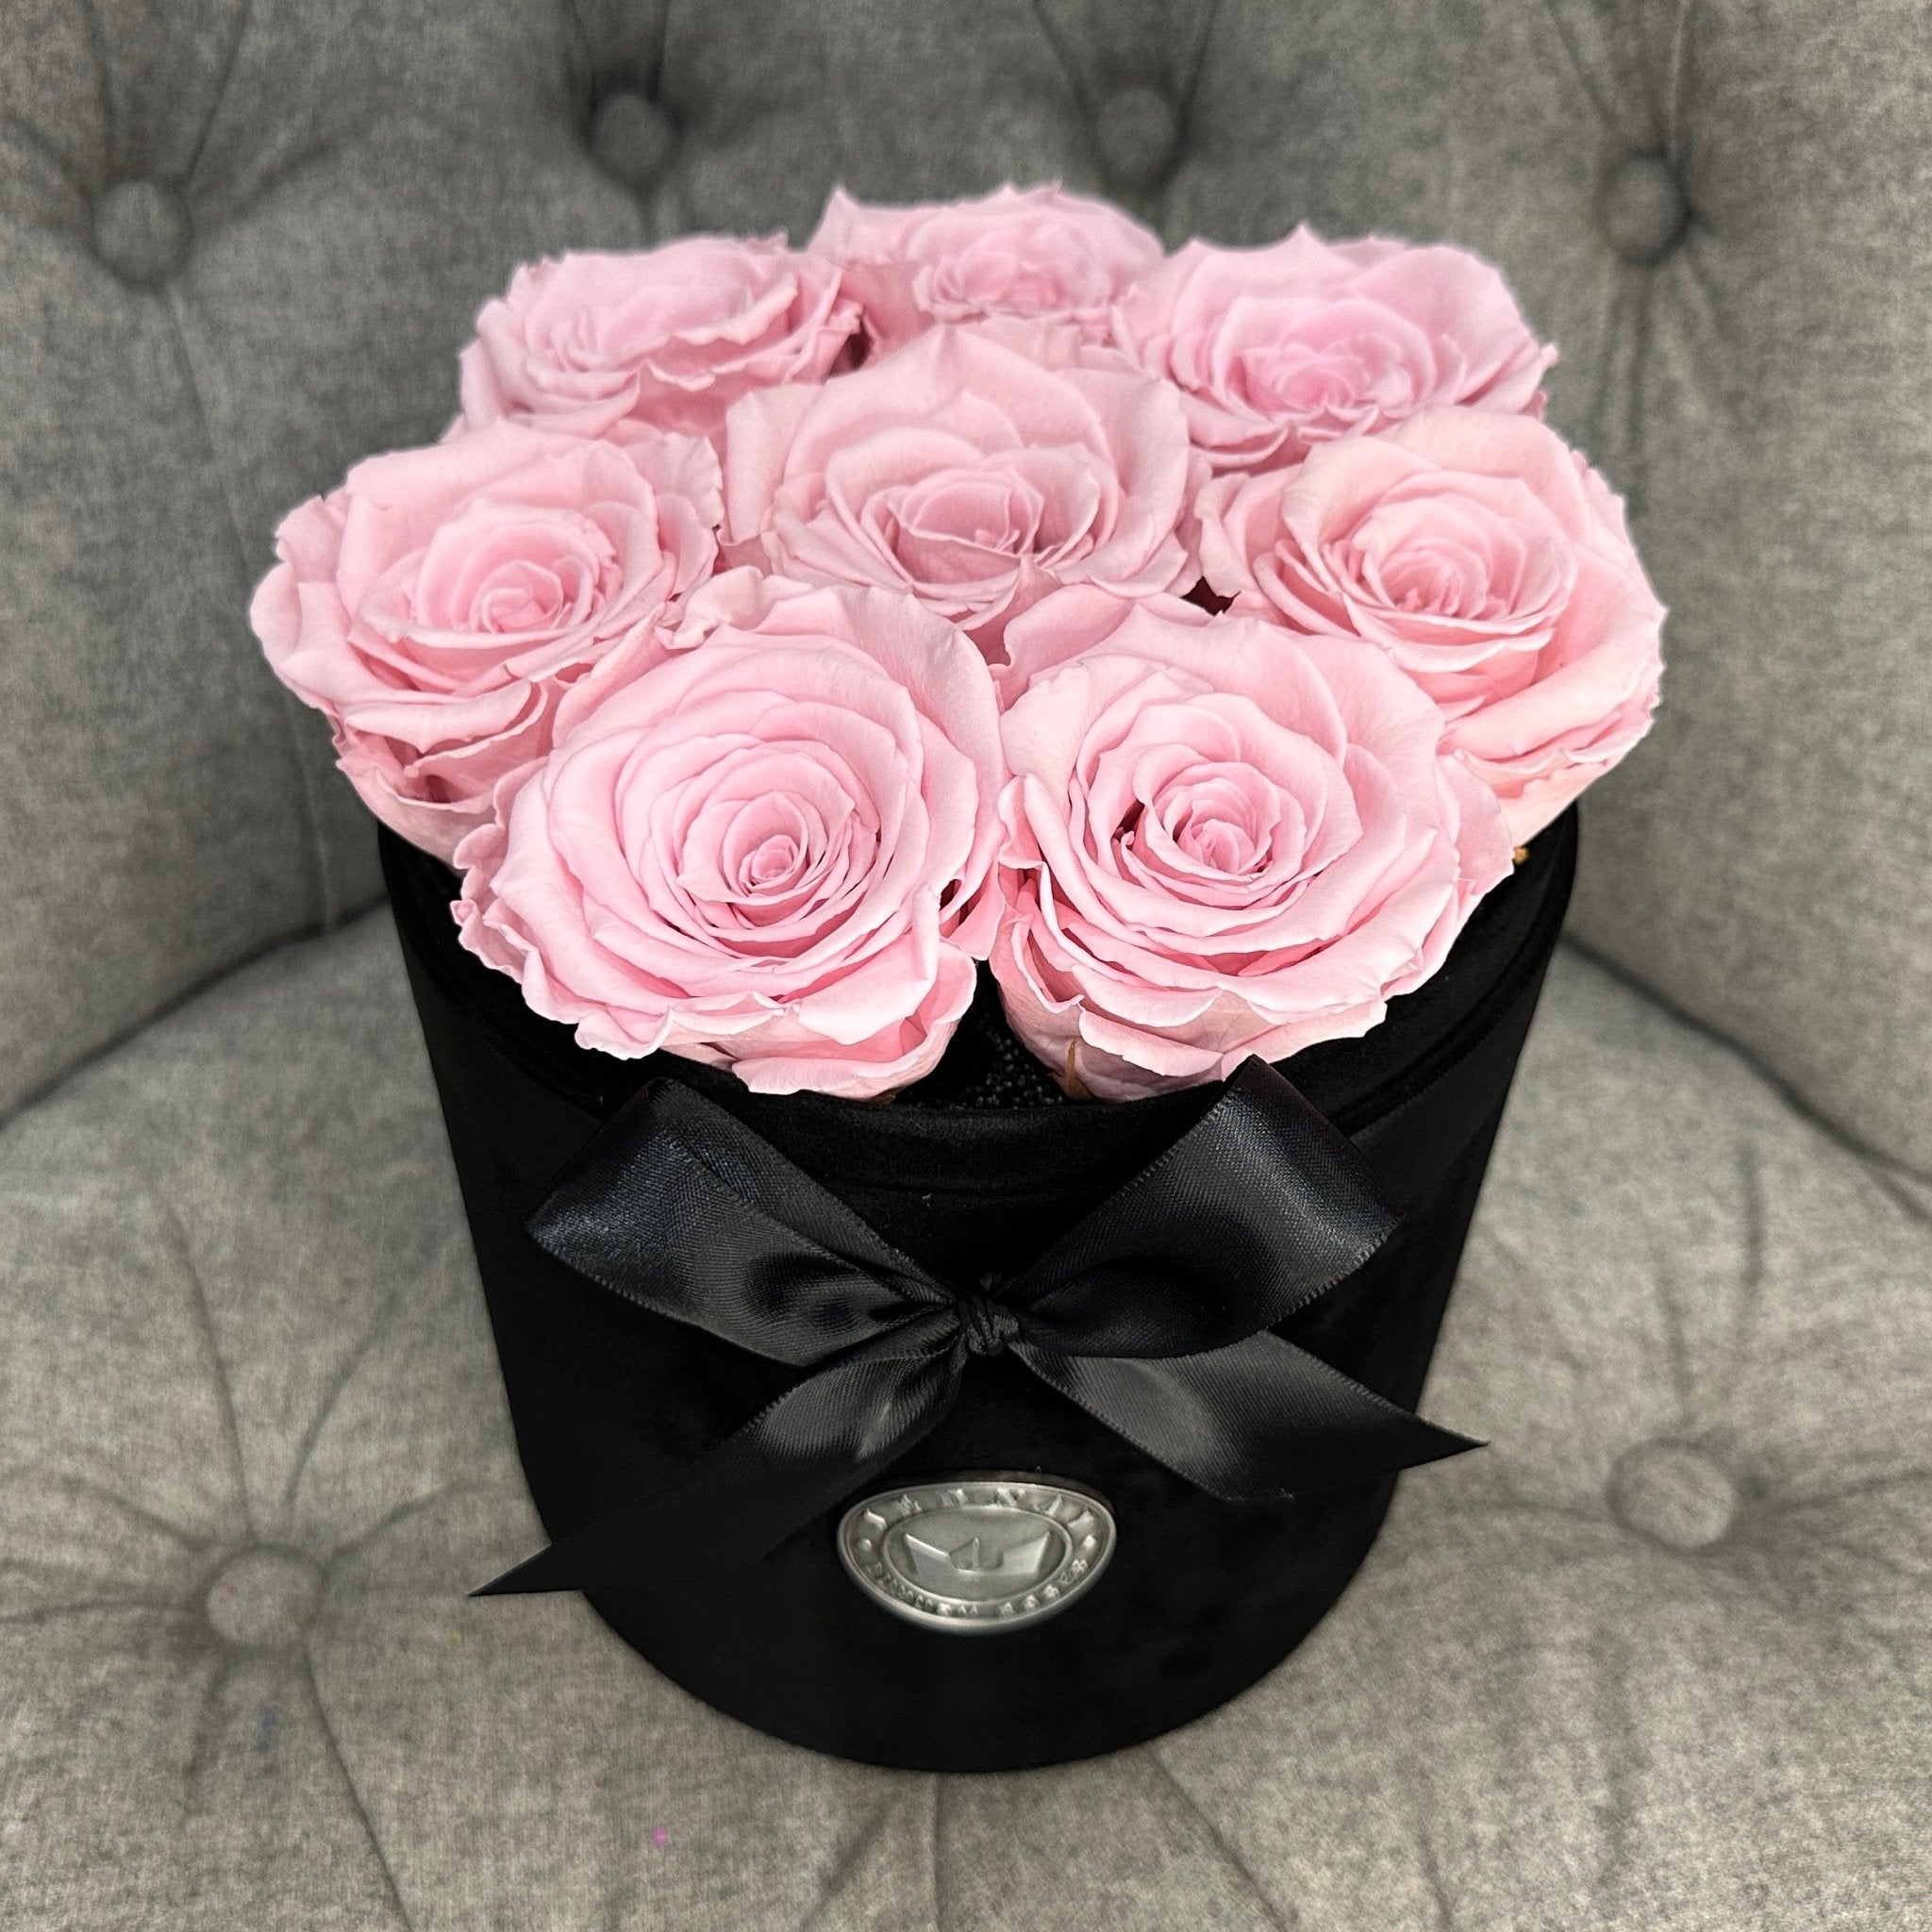 Medium Black Suede Forever Rose Box - Soft Pink Eternal Roses - Jednay Roses